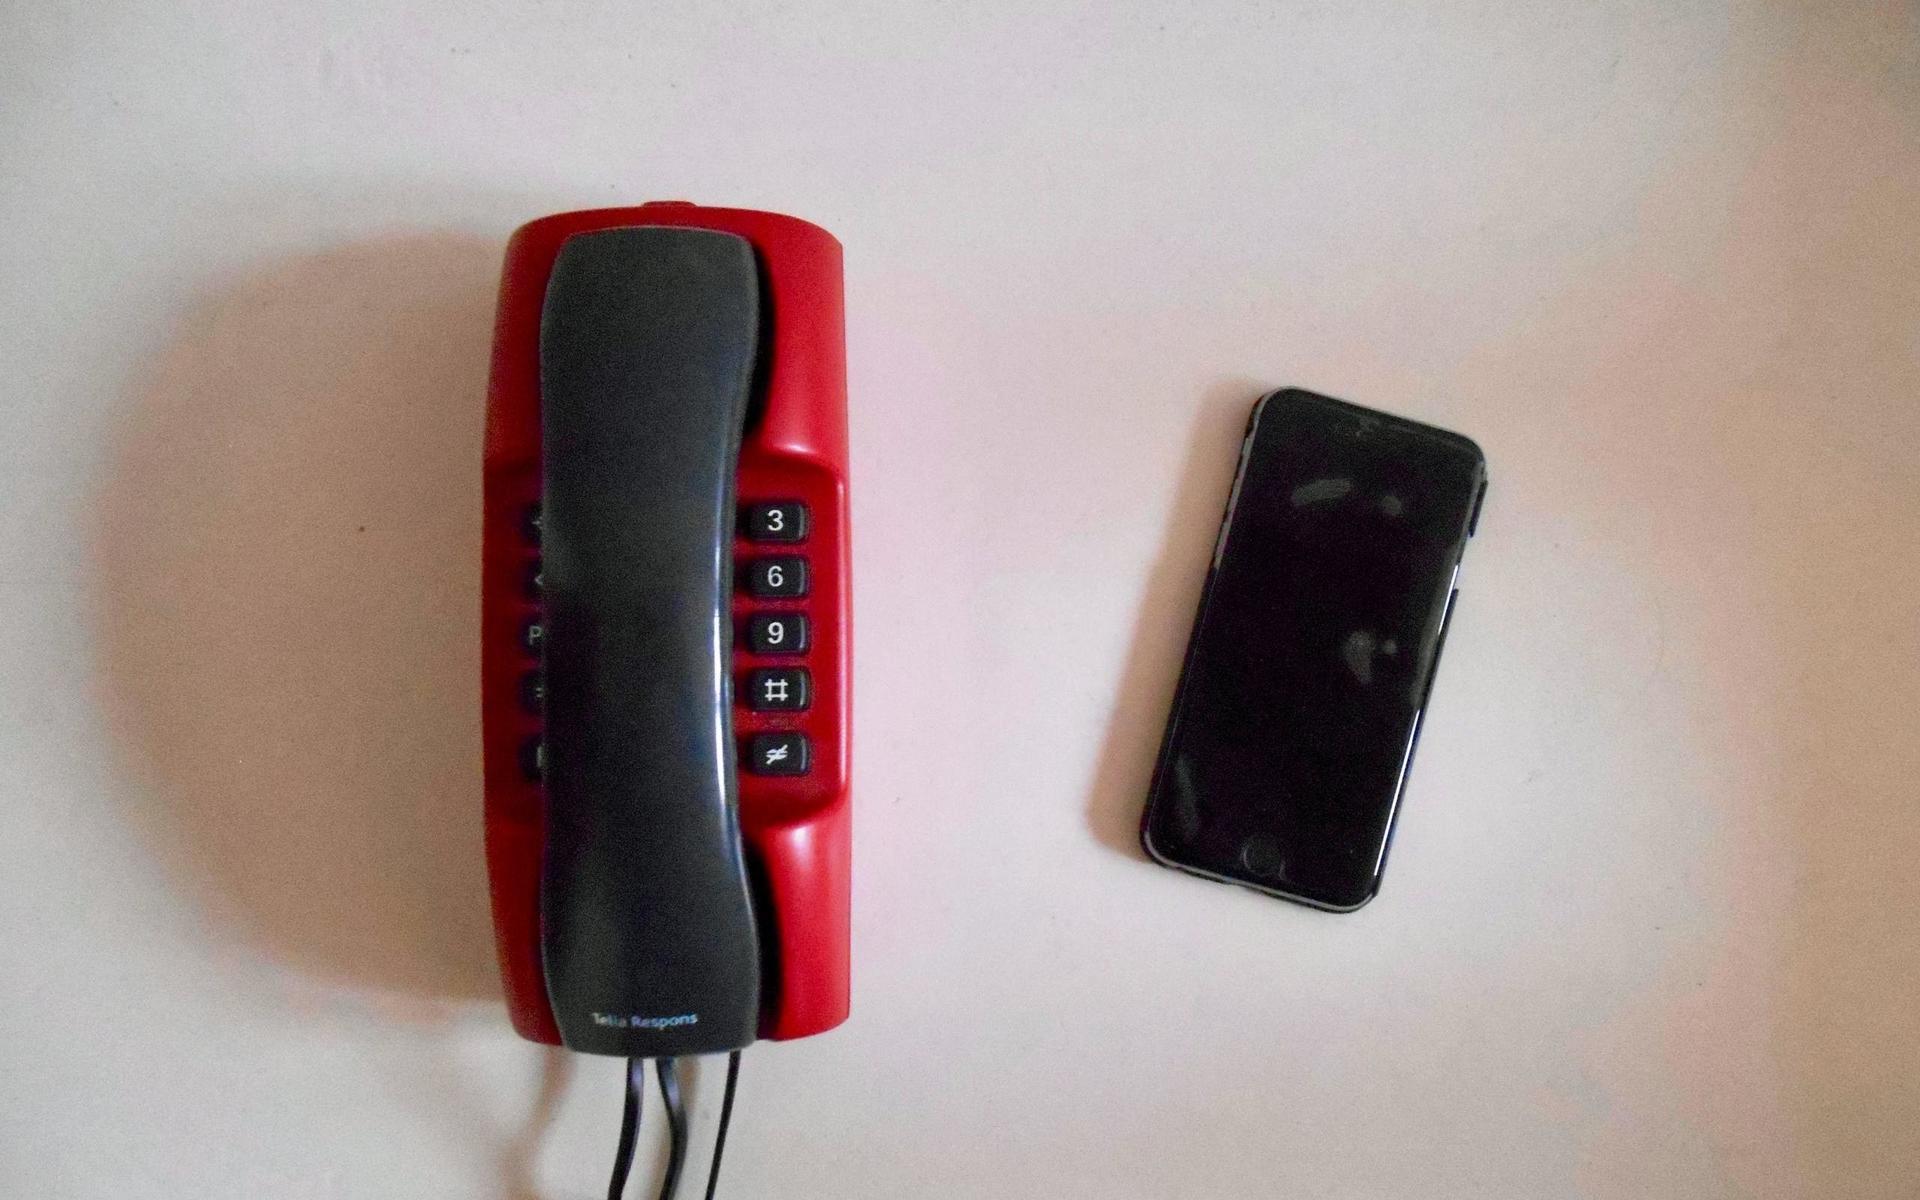 Fast telefoni försvinner. Det gamla kopparnätet tas successivt bort och ersätts med mobilnät eller fiber.